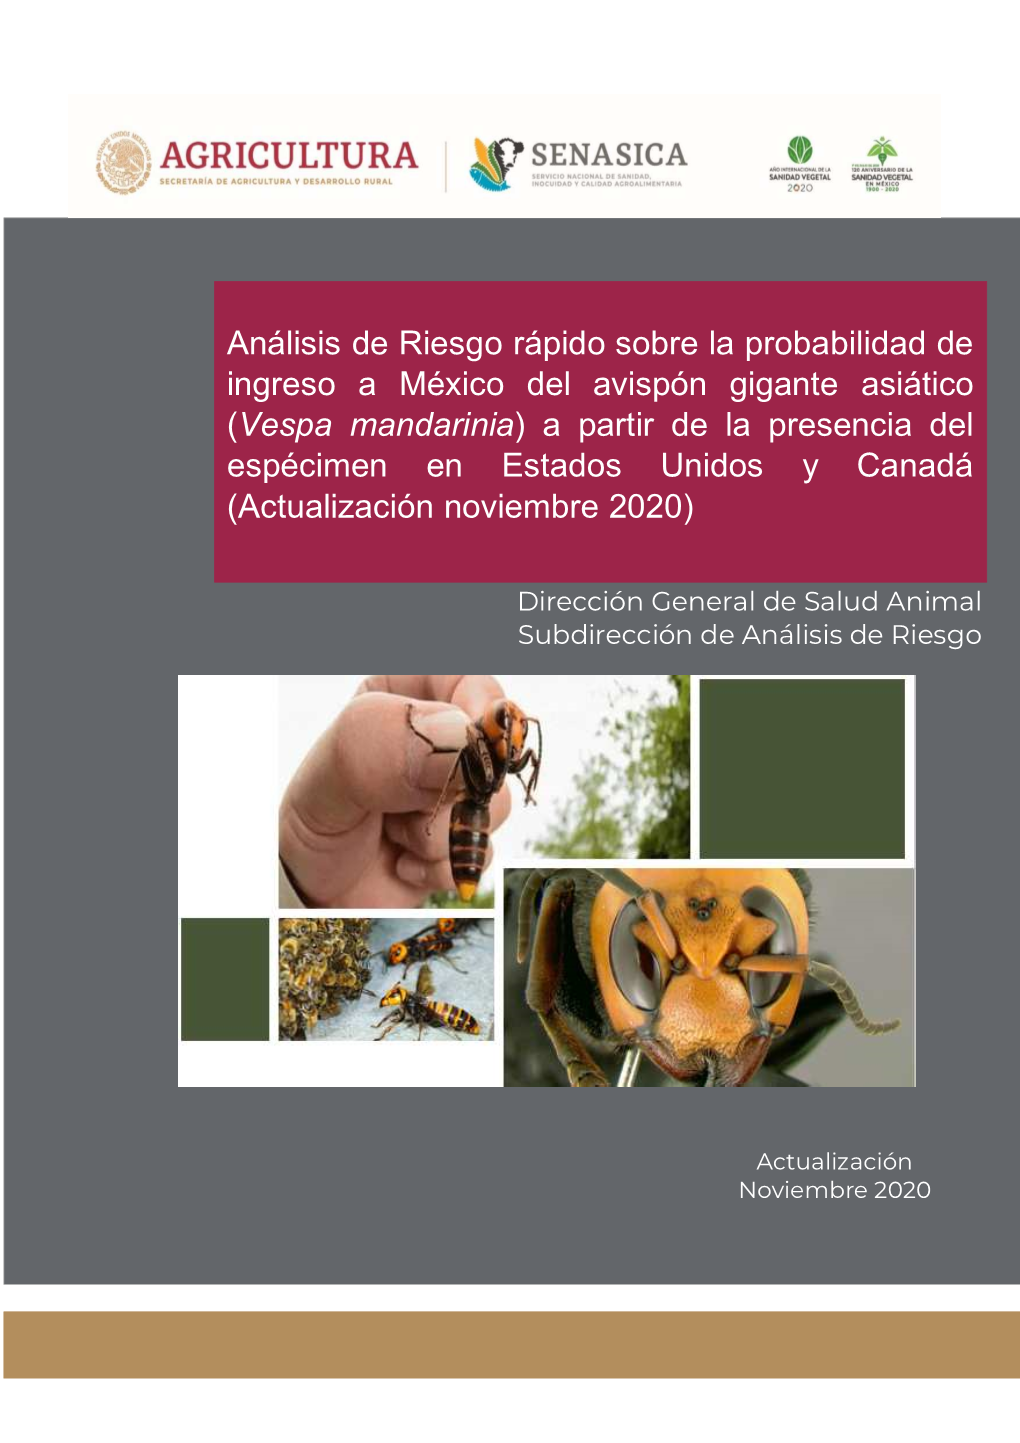 Vespa Mandarinia ) a Partir De La Presencia Del Espécimen En Estados Unidos Y Canadá (Actualización Noviembre 2020)